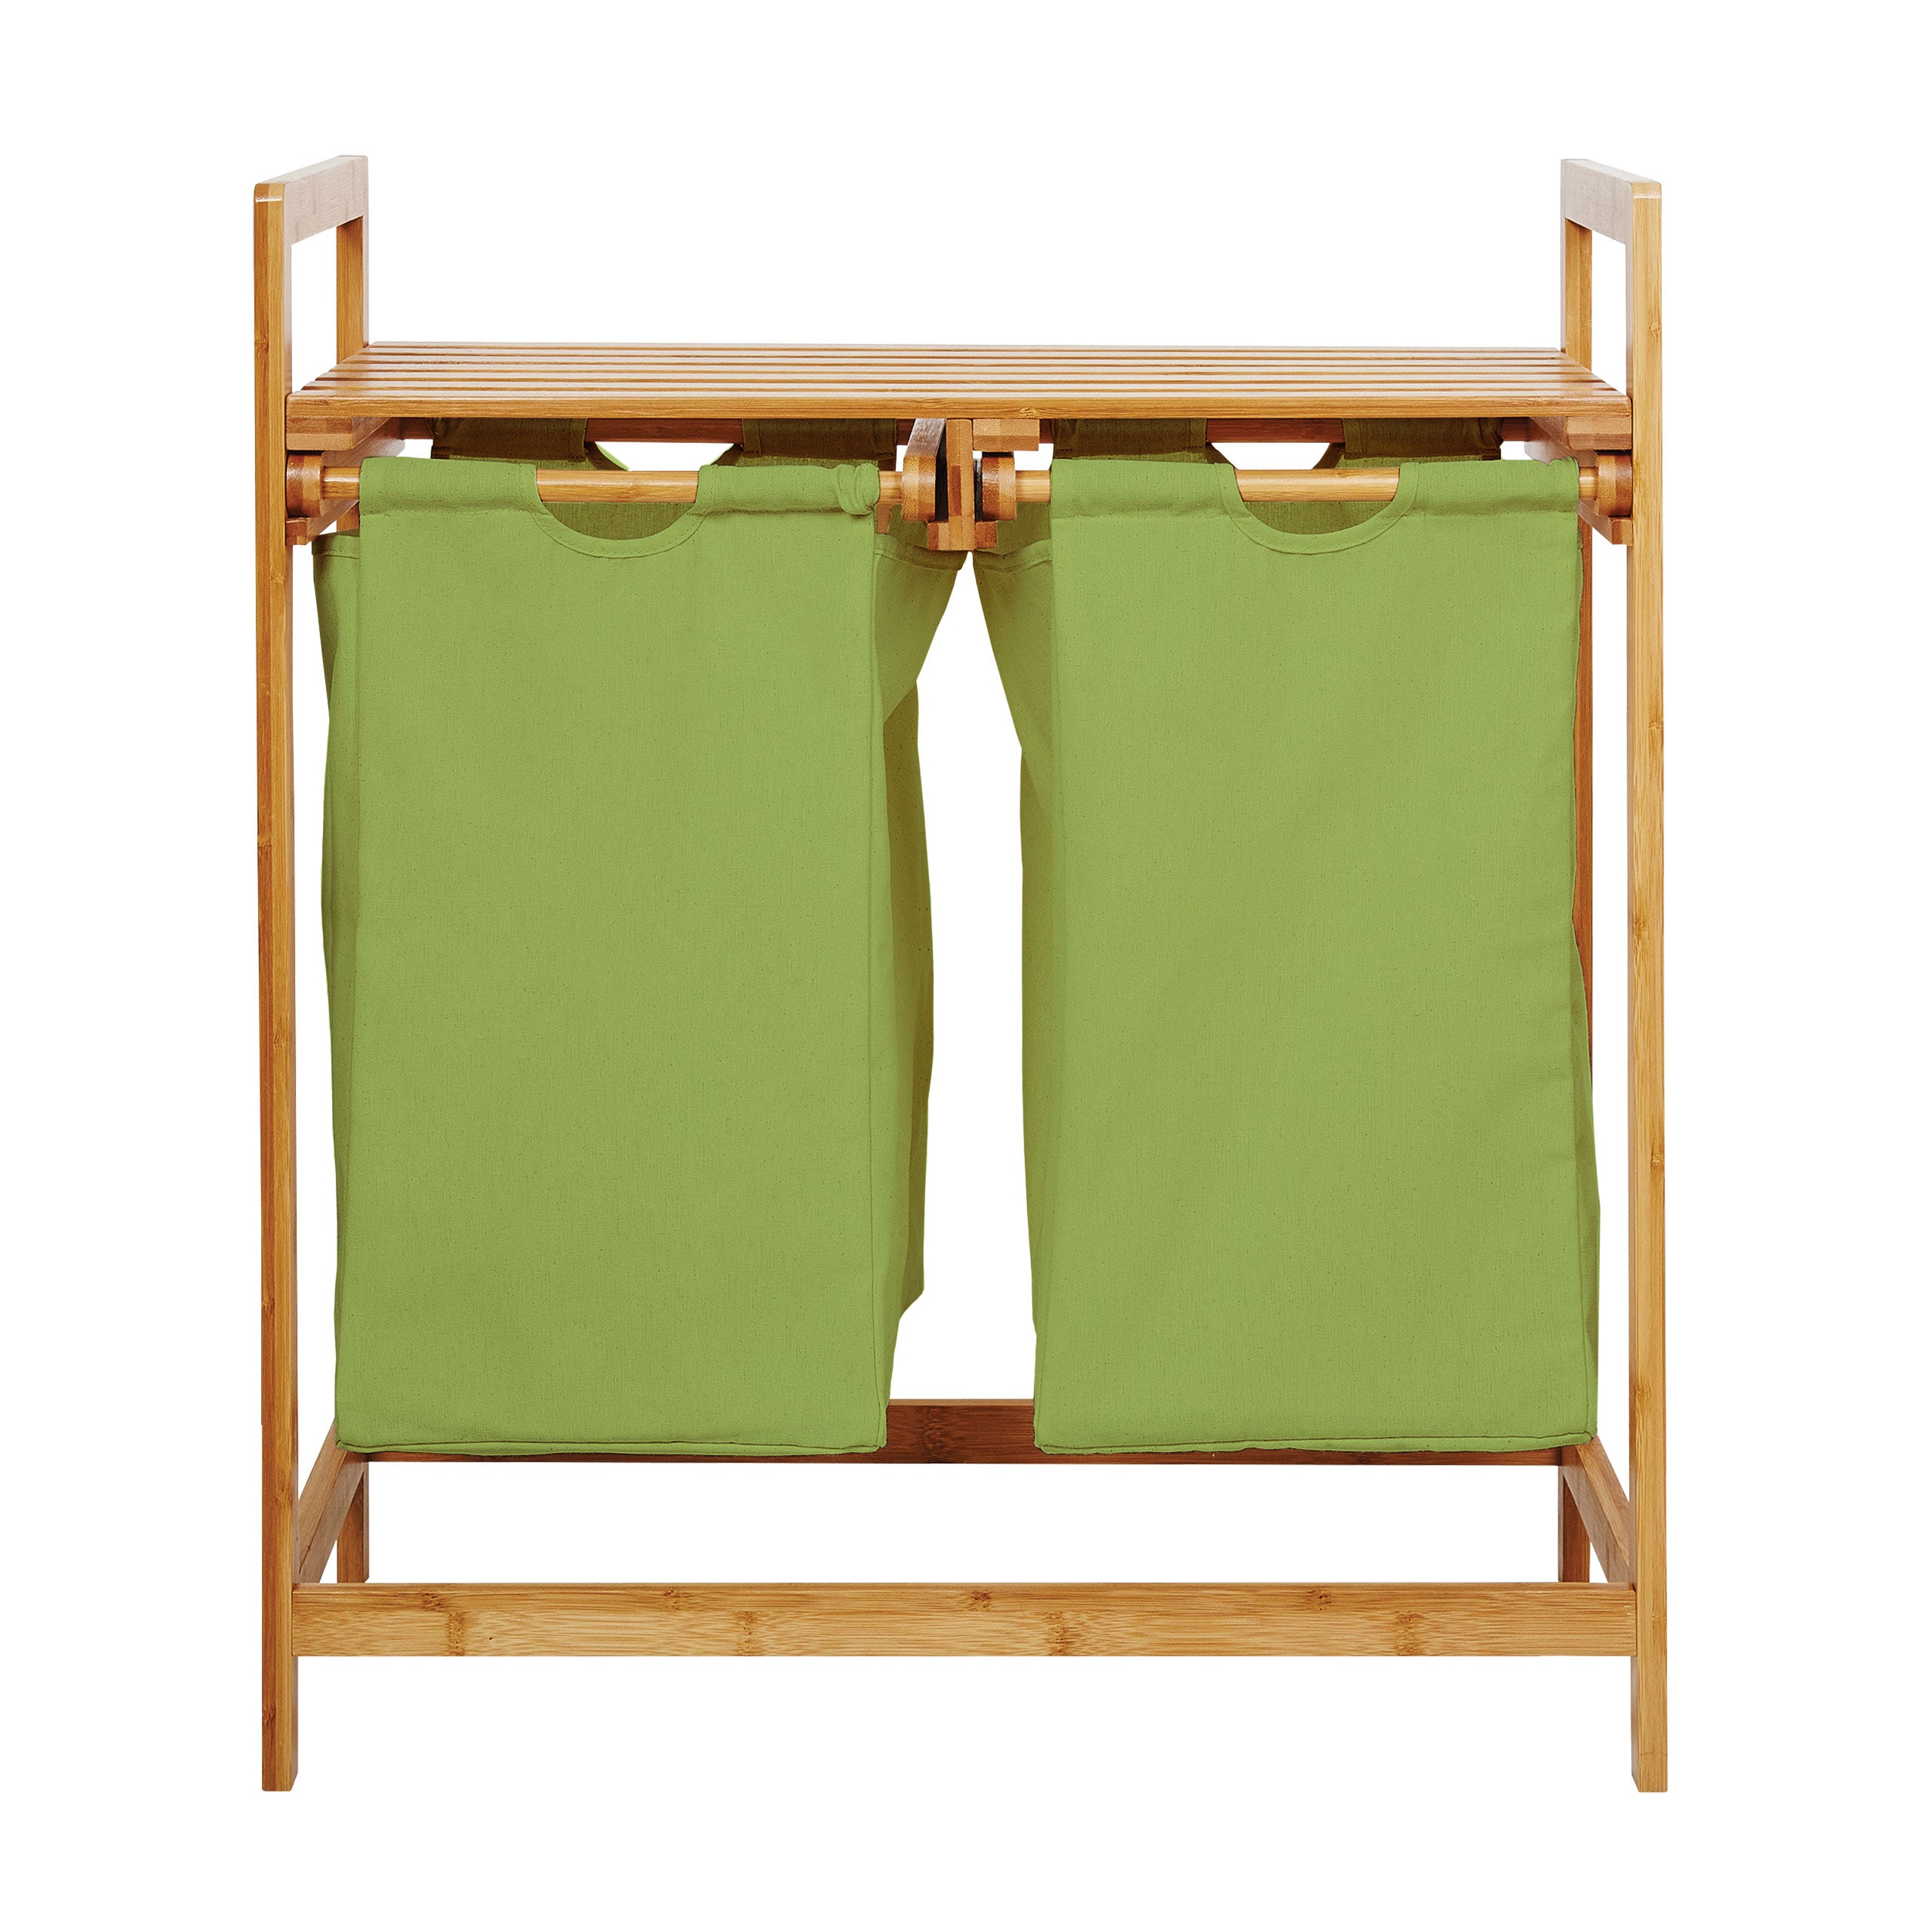 Bambus Wäschekorb mit 2 ausziehbaren Wäschesacken - 73 x 64 x 33 cm - Grün